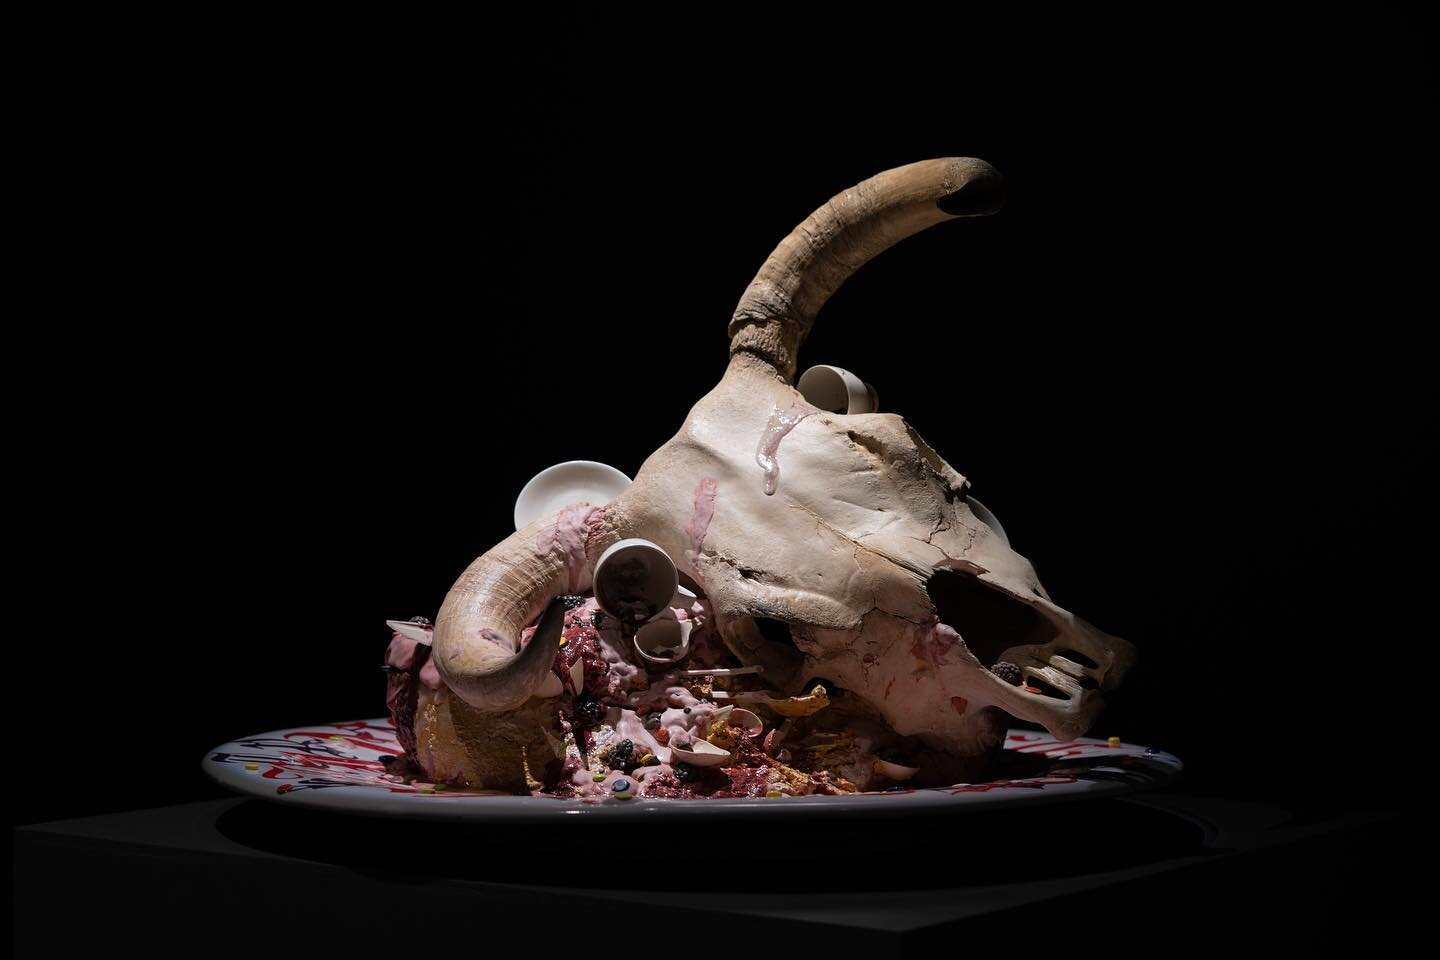 &ldquo;LA FINE&rdquo;, ceramica policroma, 2015 Bertozzi&amp;Casoni #carlocinquegallery #bertozziecasoni #mirabilitracce 
.
.
.
.
.
#carlocinque #gallery #contemporaryart #art #galleria #cake #artgallery #galleriadarte #brera #milano #ossa #skull #te